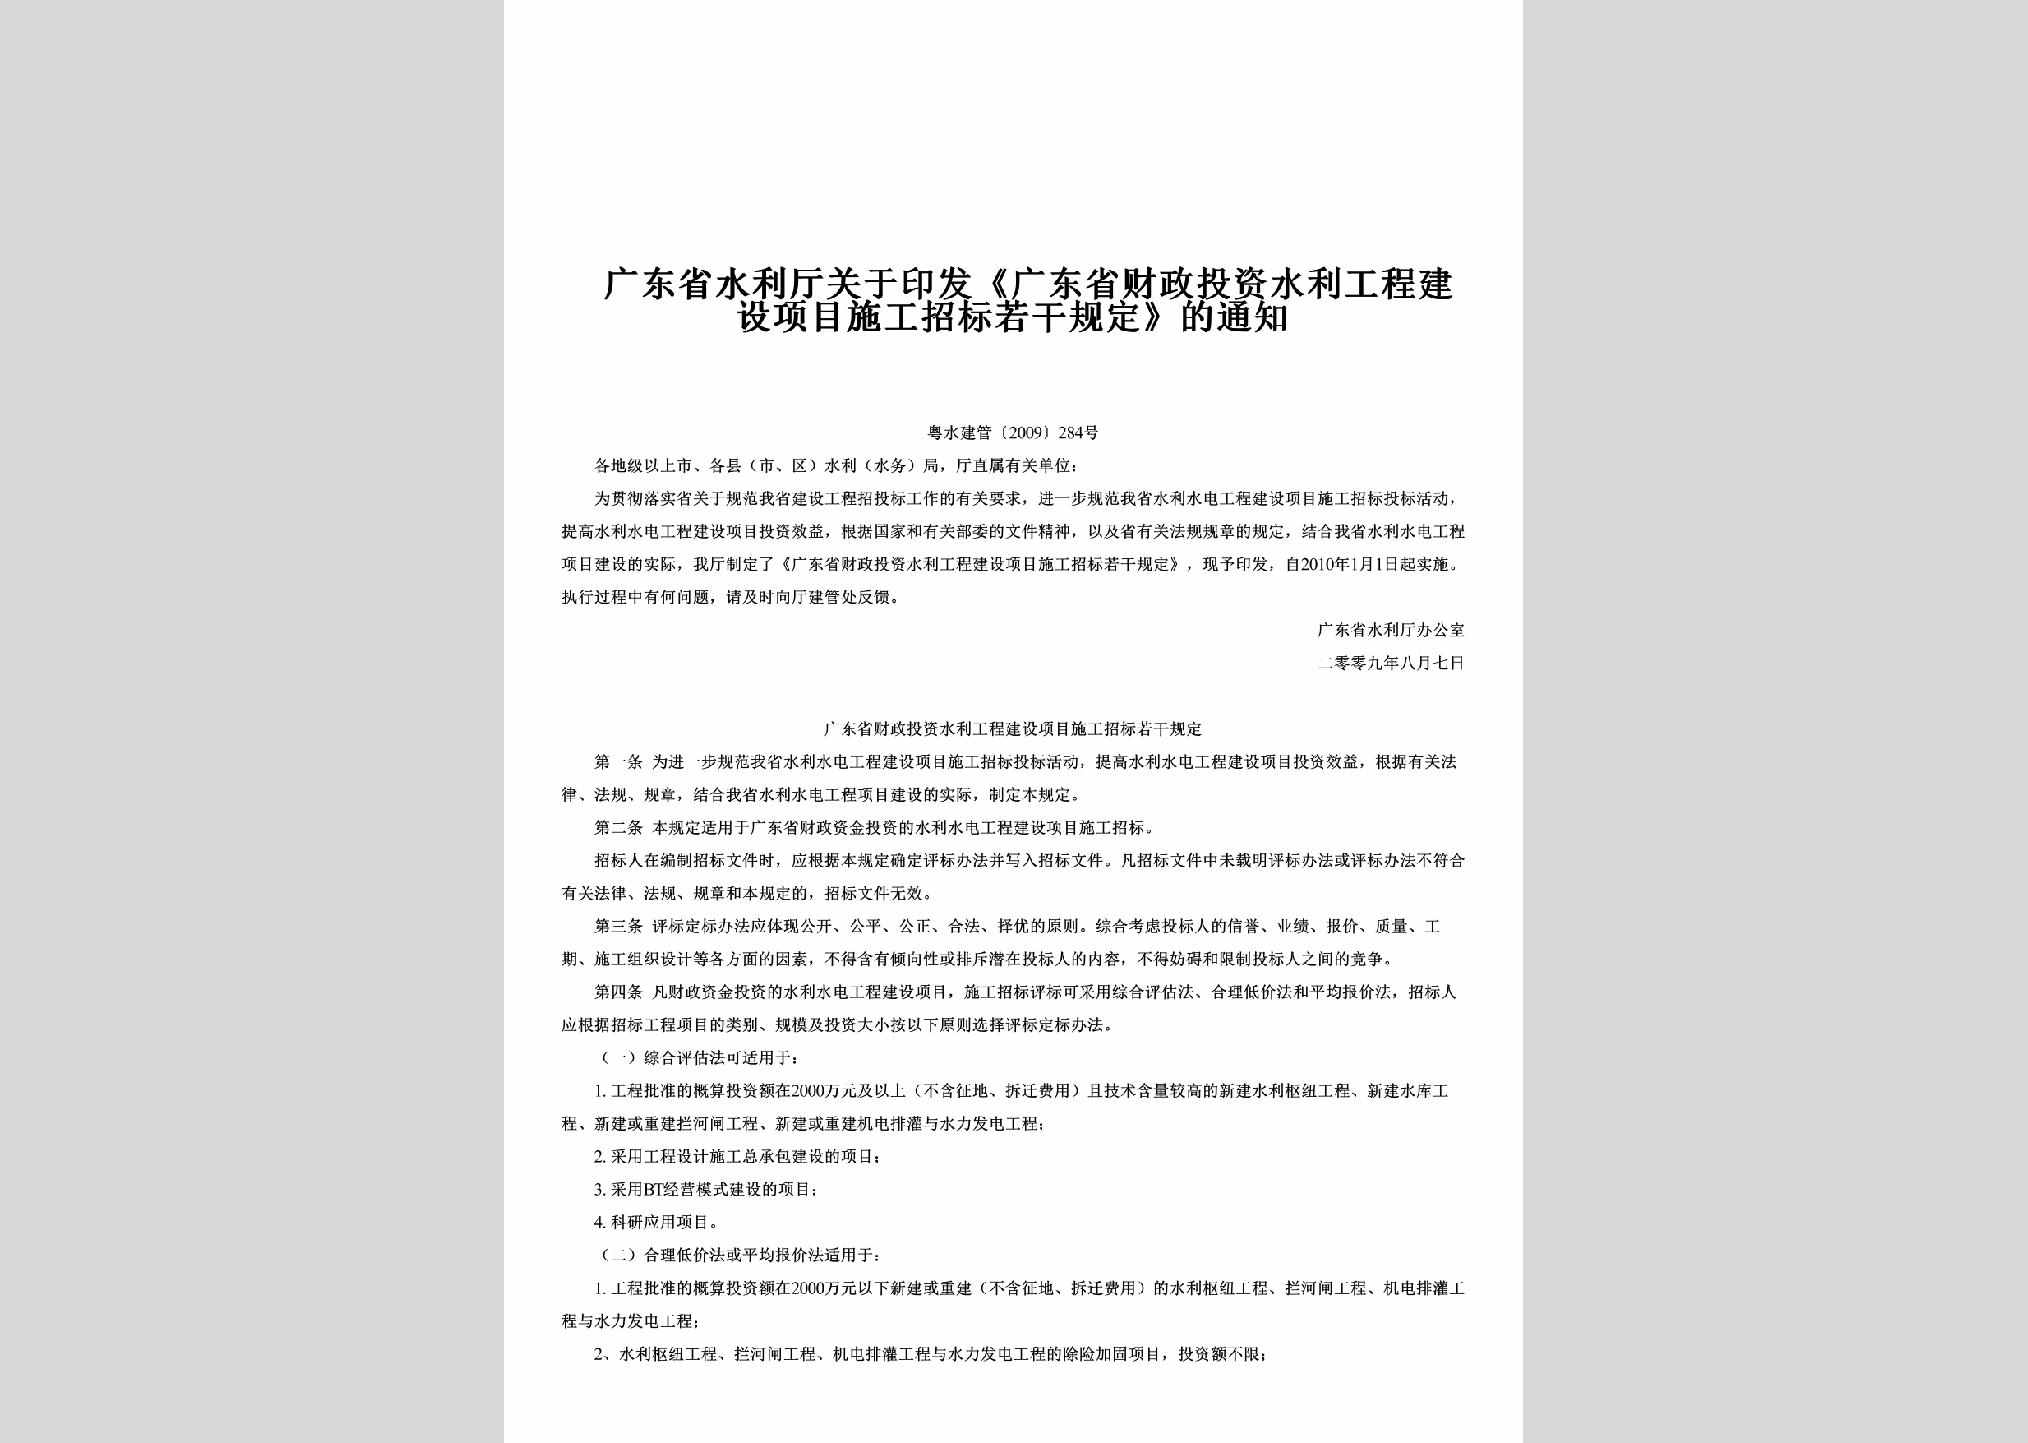 粤水建管[2009]284号：关于印发《广东省财政投资水利工程建设项目施工招标若干规定》的通知